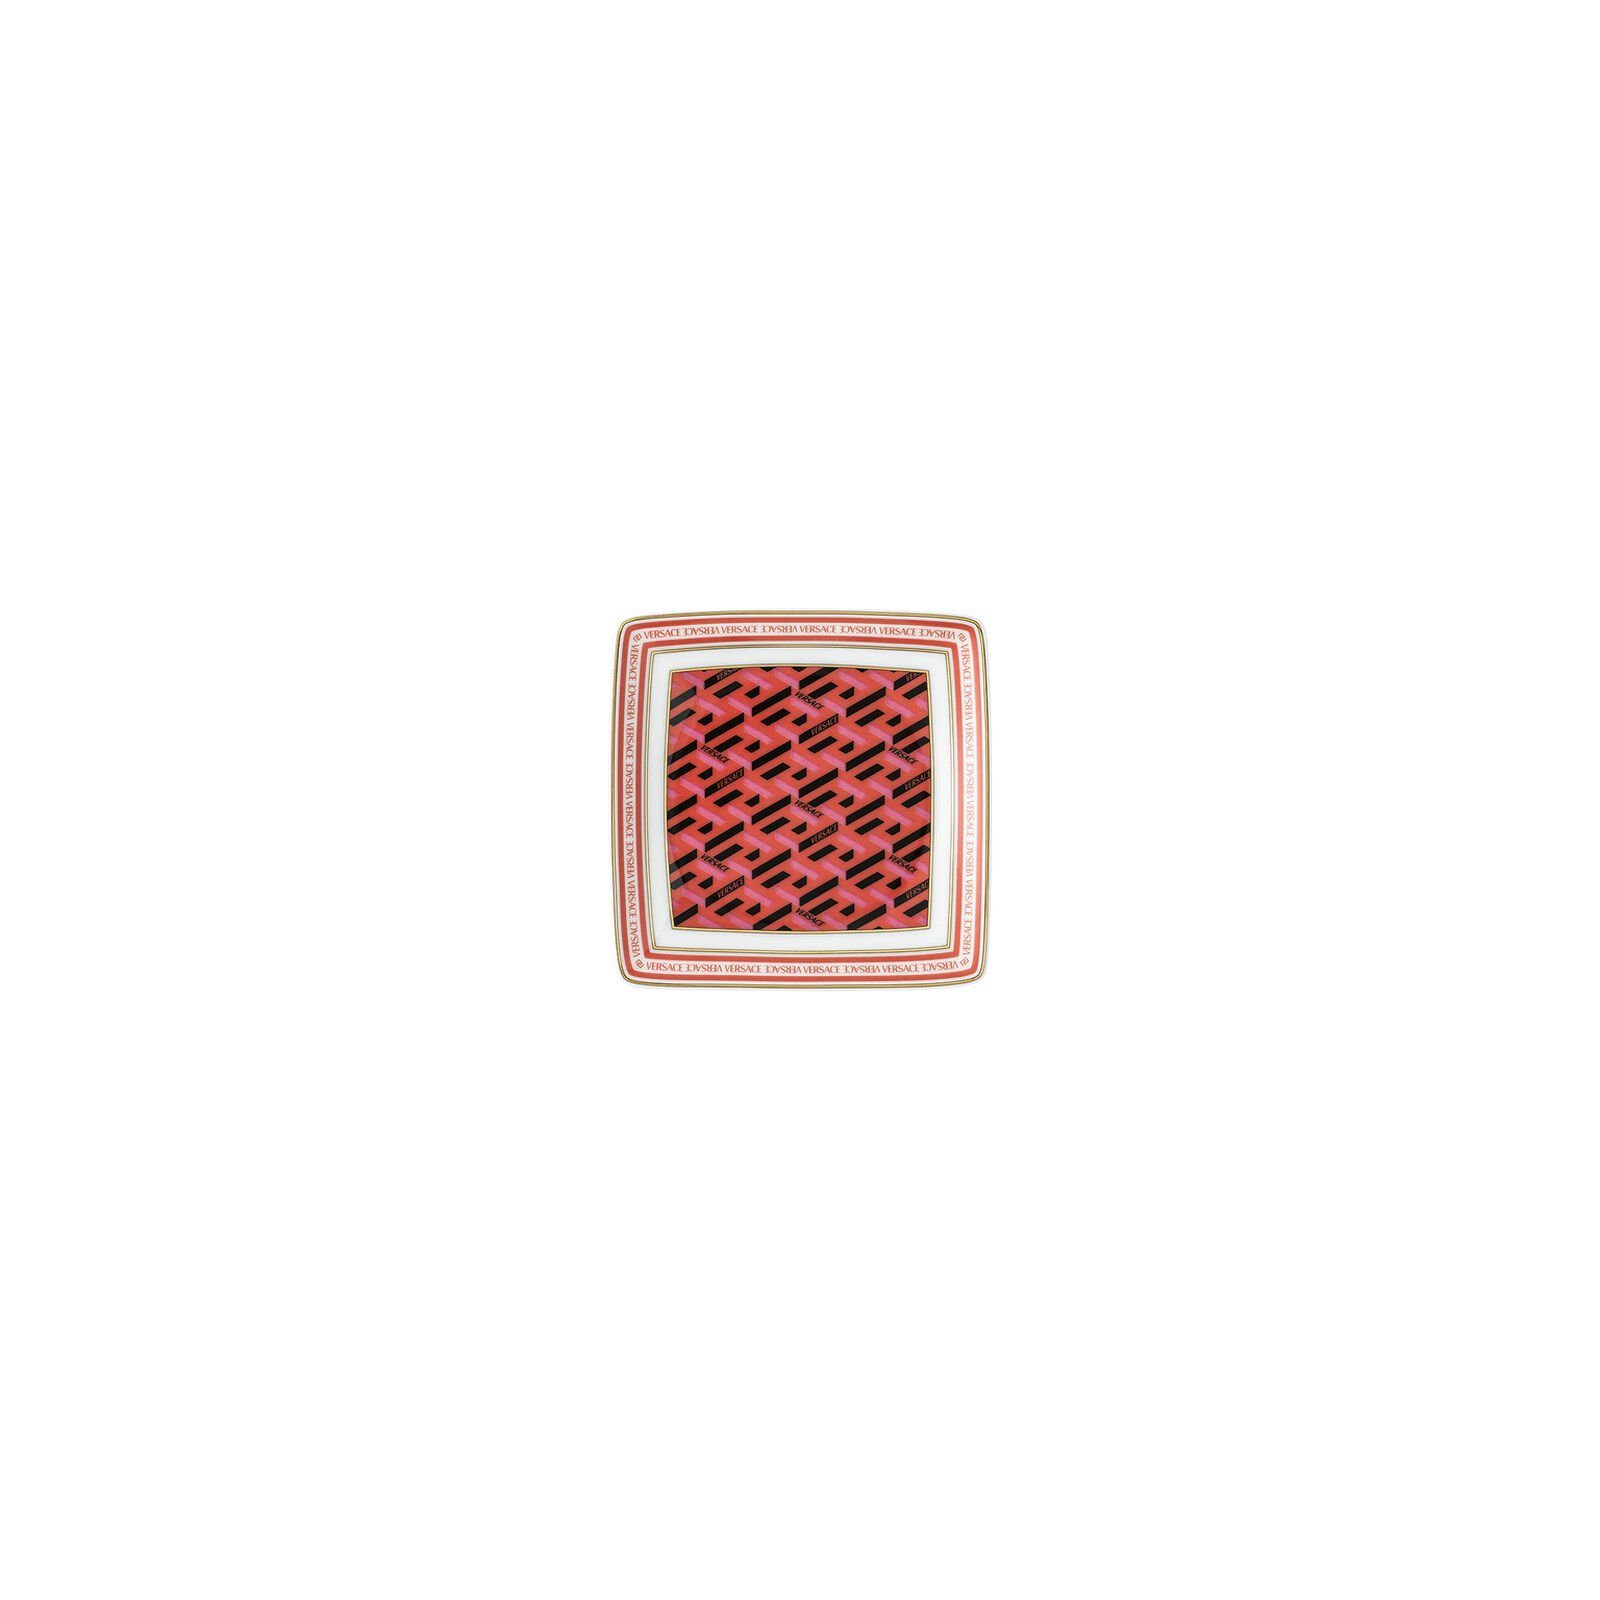 Dekoschale La Rosenthal Greca 9cm meets quadratisch Schälchen Red Versace Signature flach